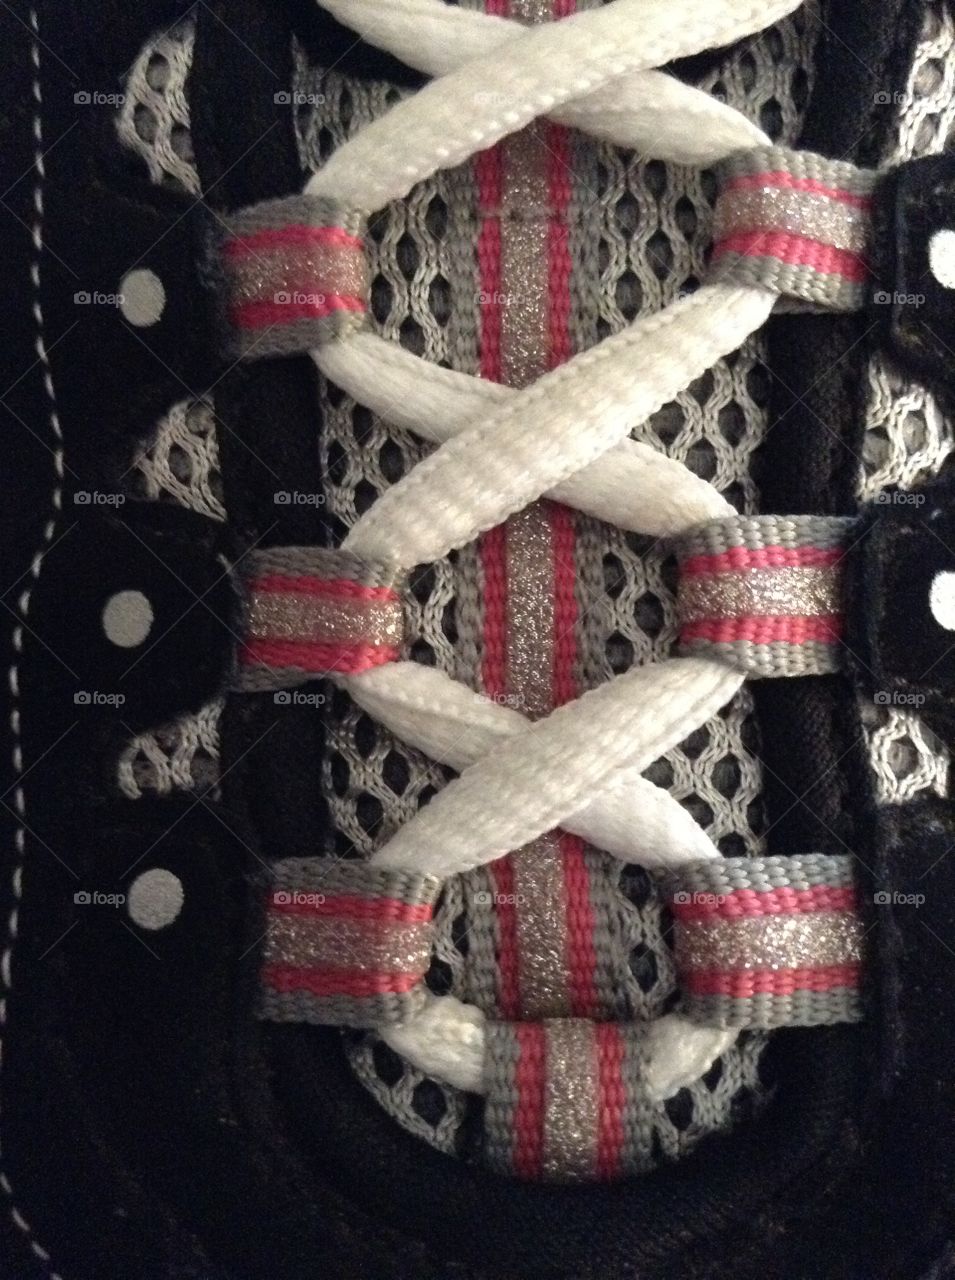 Up close shoe laces